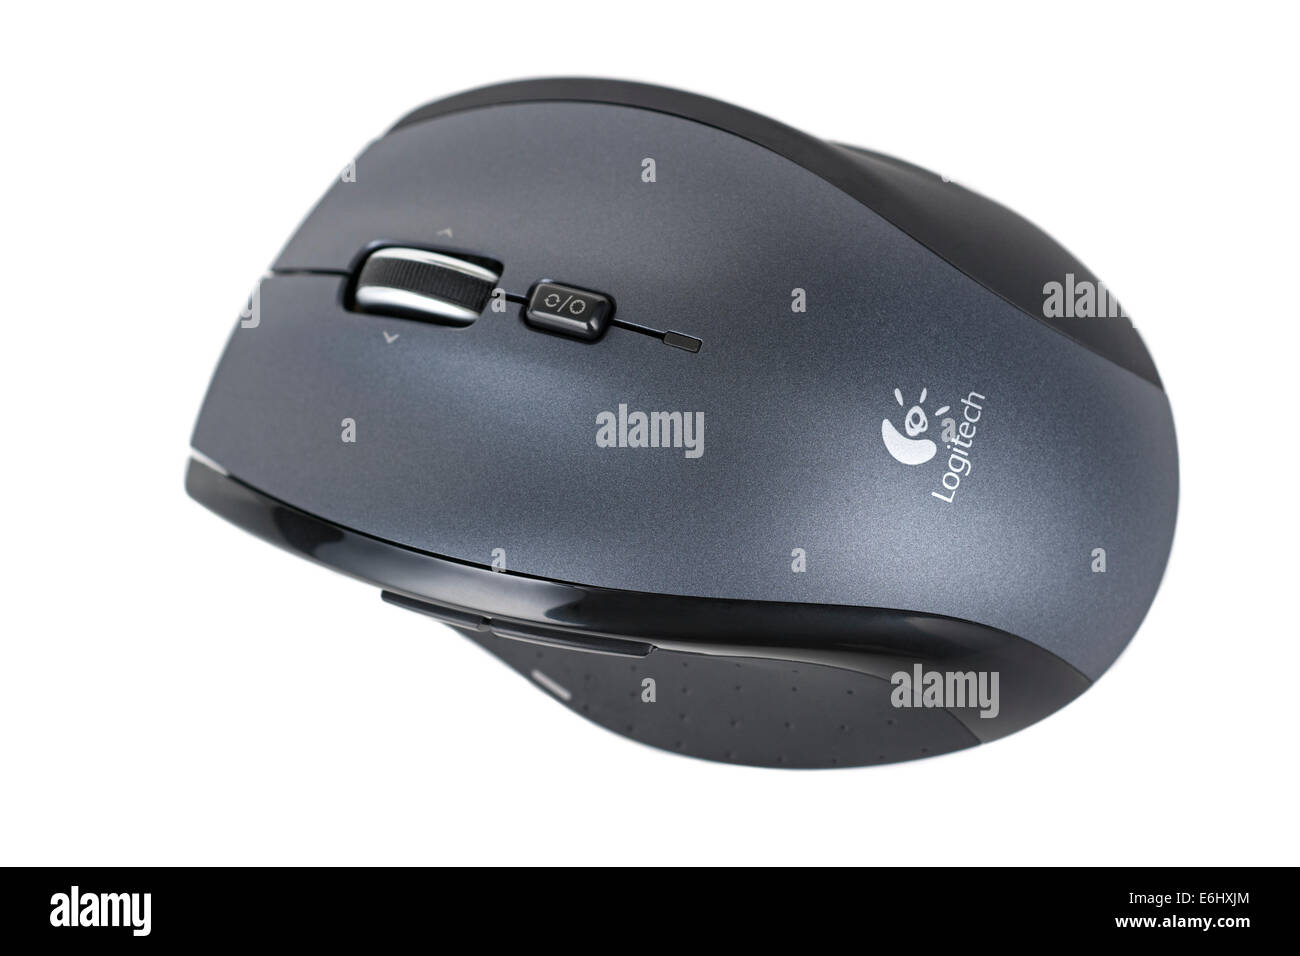 Mouse laser immagini e fotografie stock ad alta risoluzione - Alamy